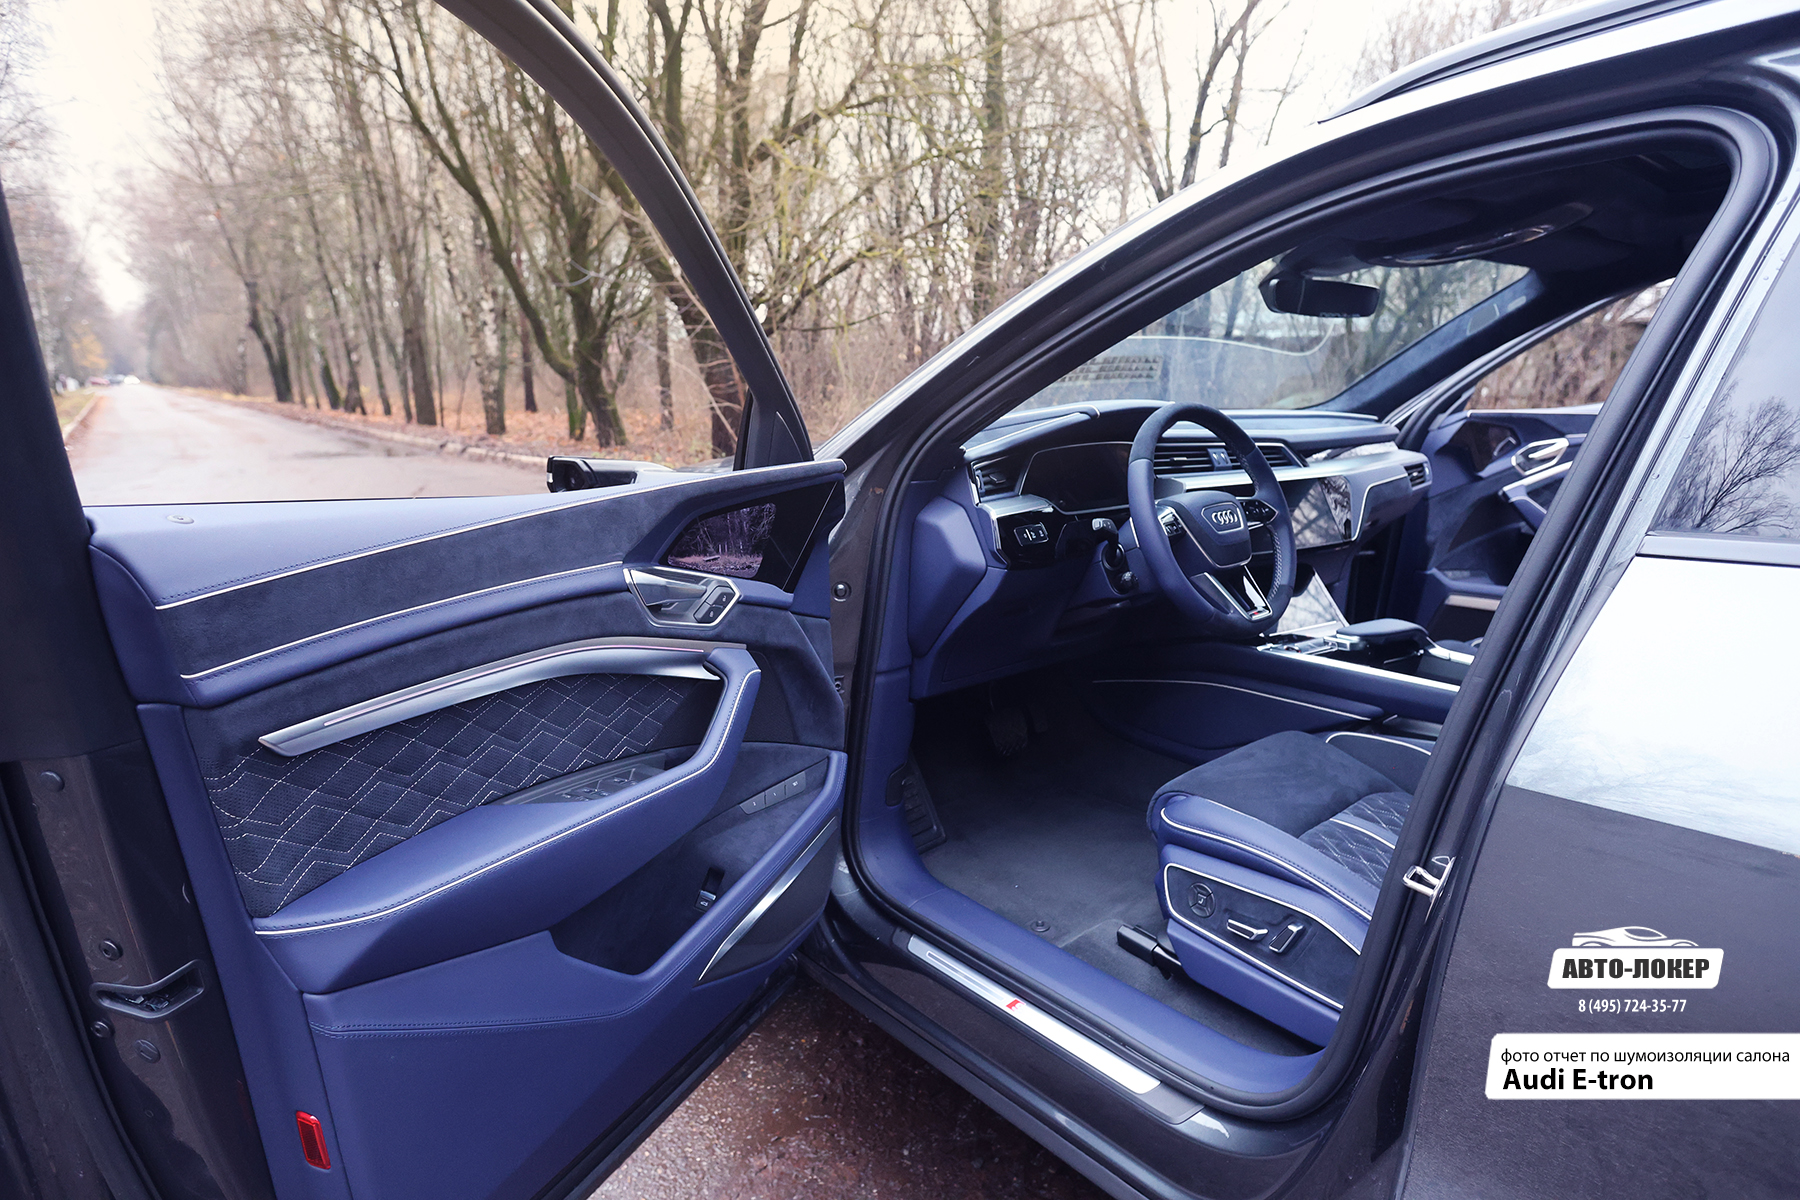 Перетяжка дверей салона Audi E-tron в натуральную кожу